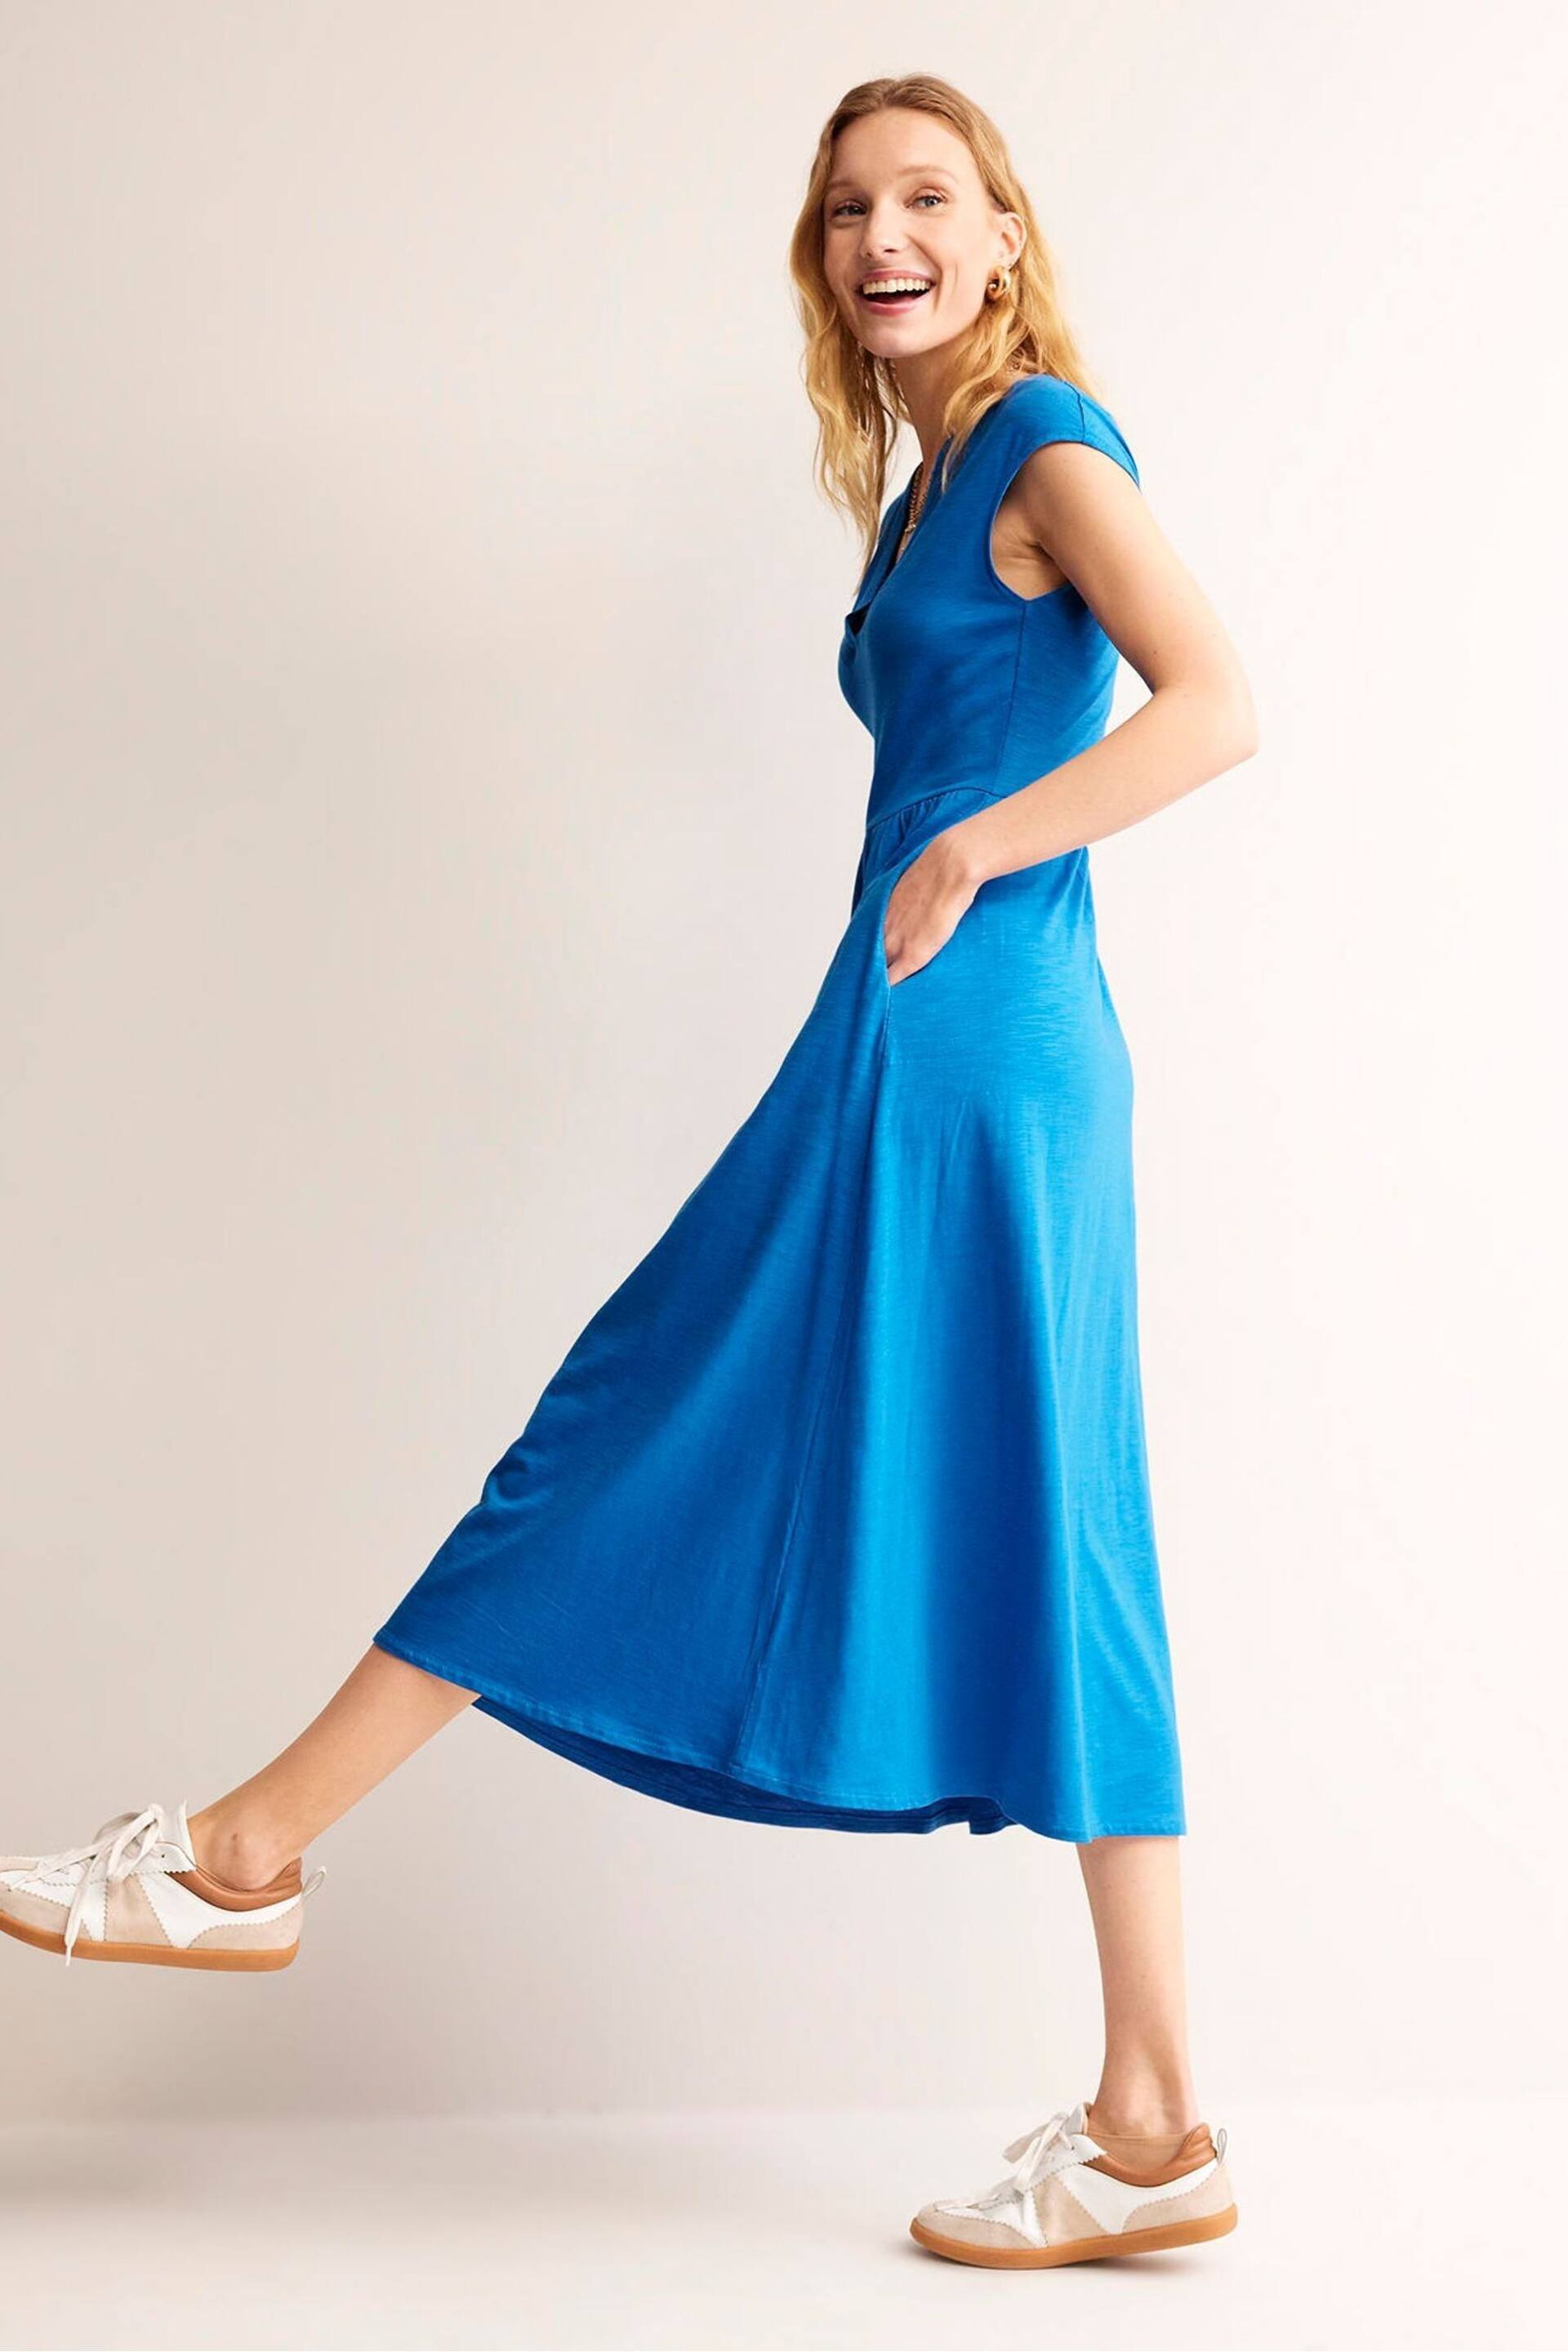 Boden Blue Chloe Notch Jersey Midi Dress - Image 2 of 6